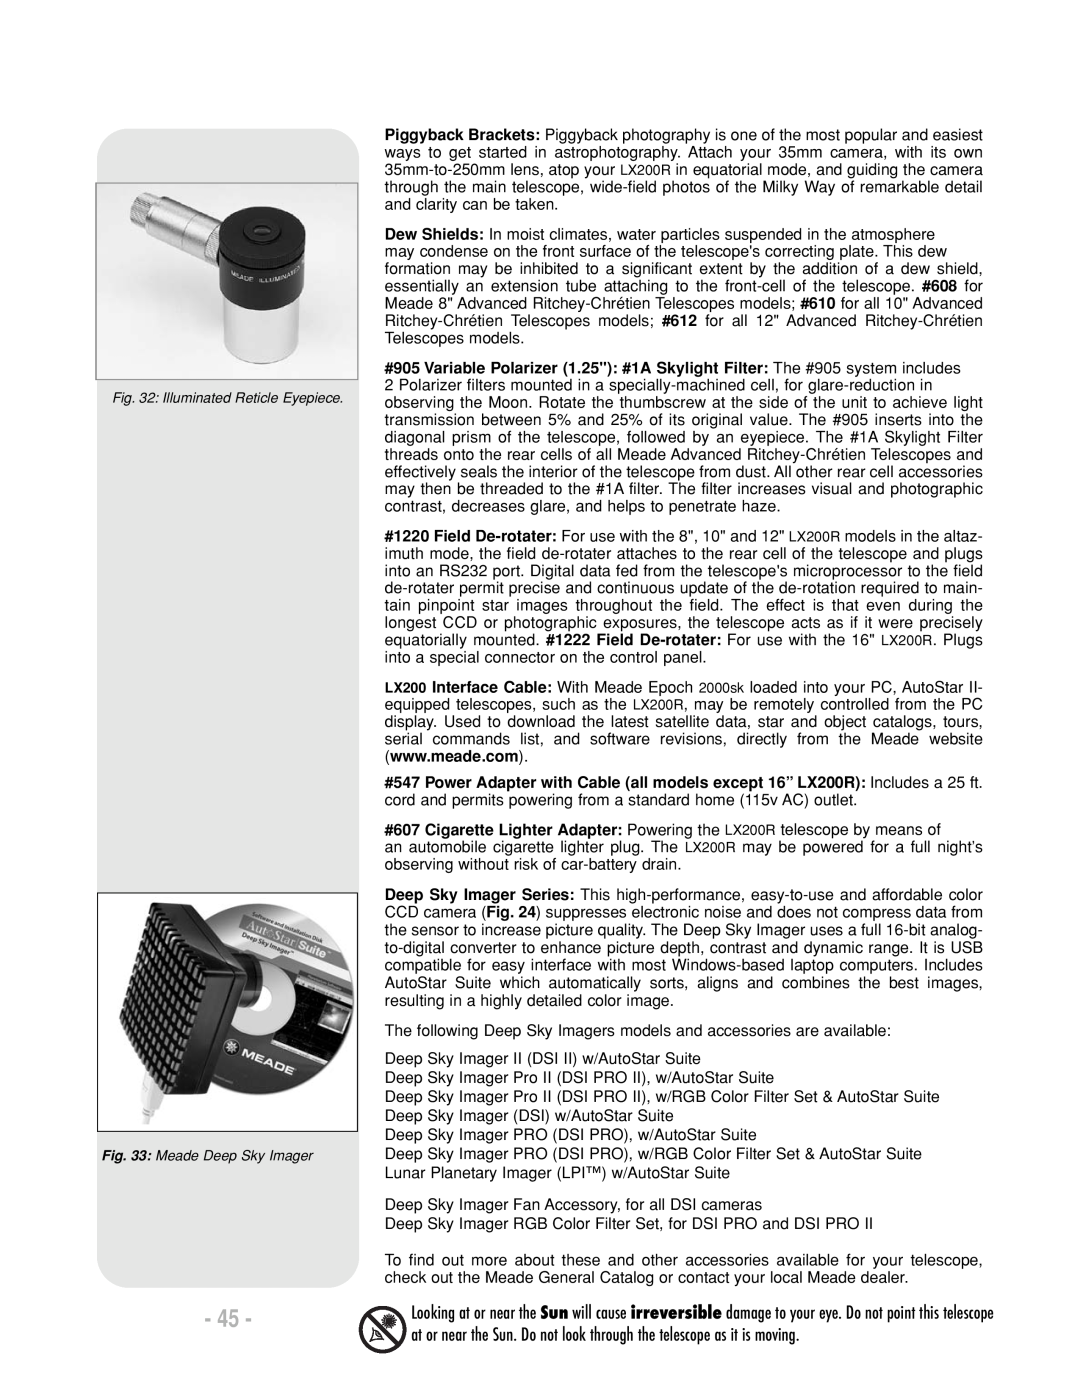 Meade LX200 R instruction manual Deep Sky Imager II DSI II w/AutoStar Suite 